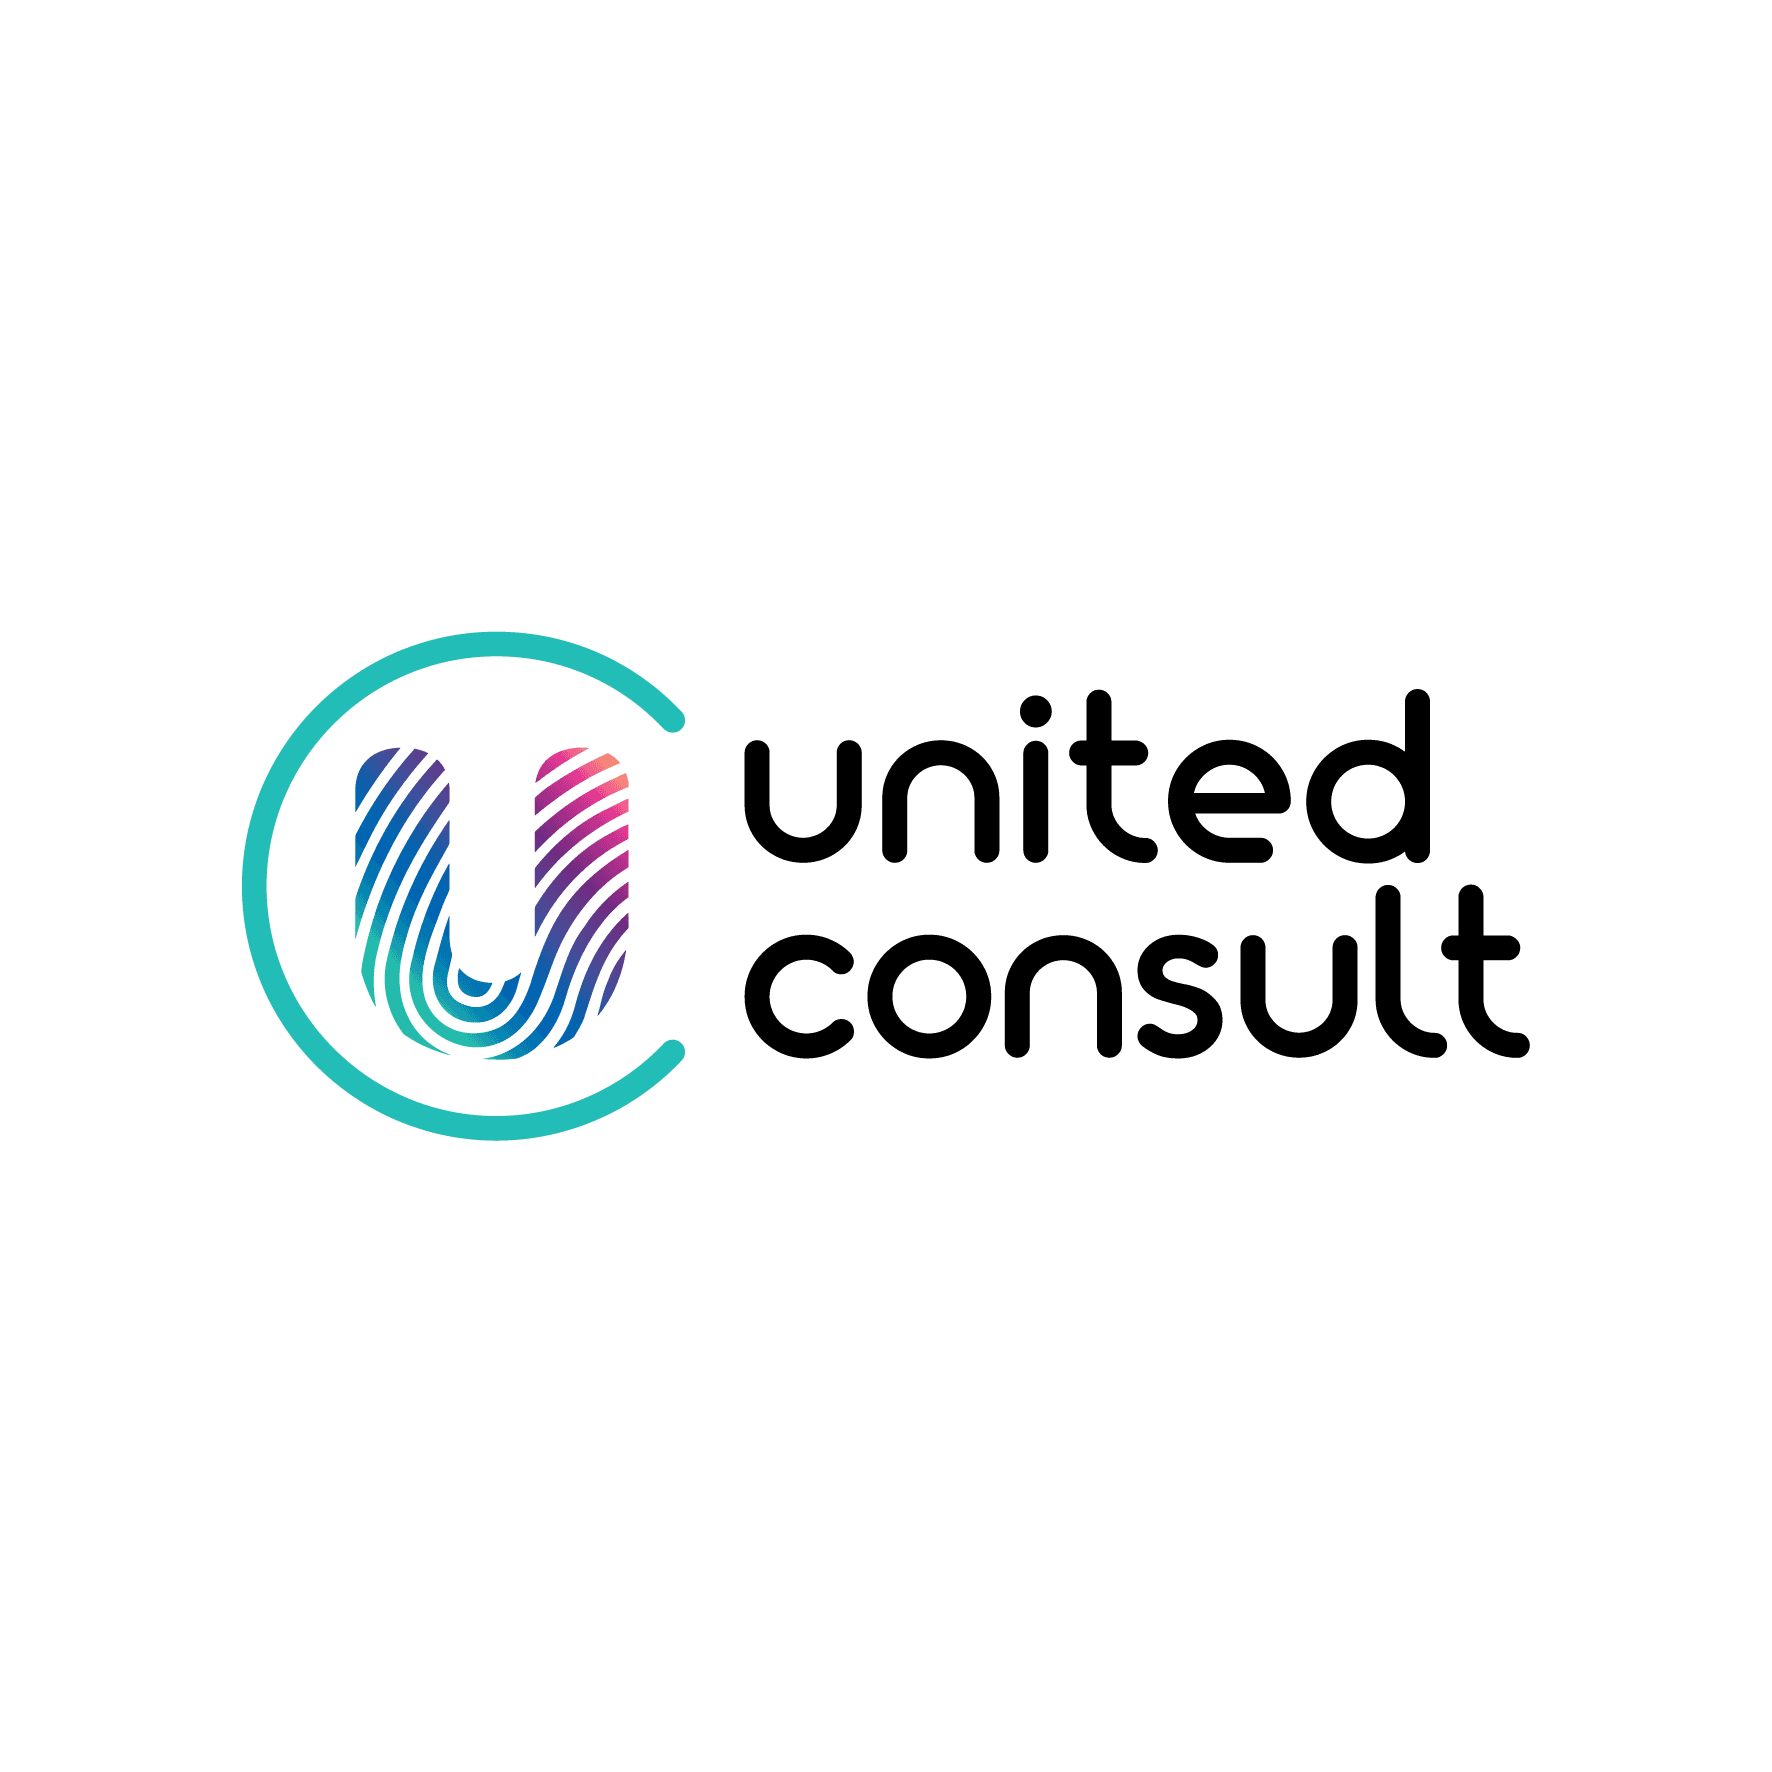 united consult logo